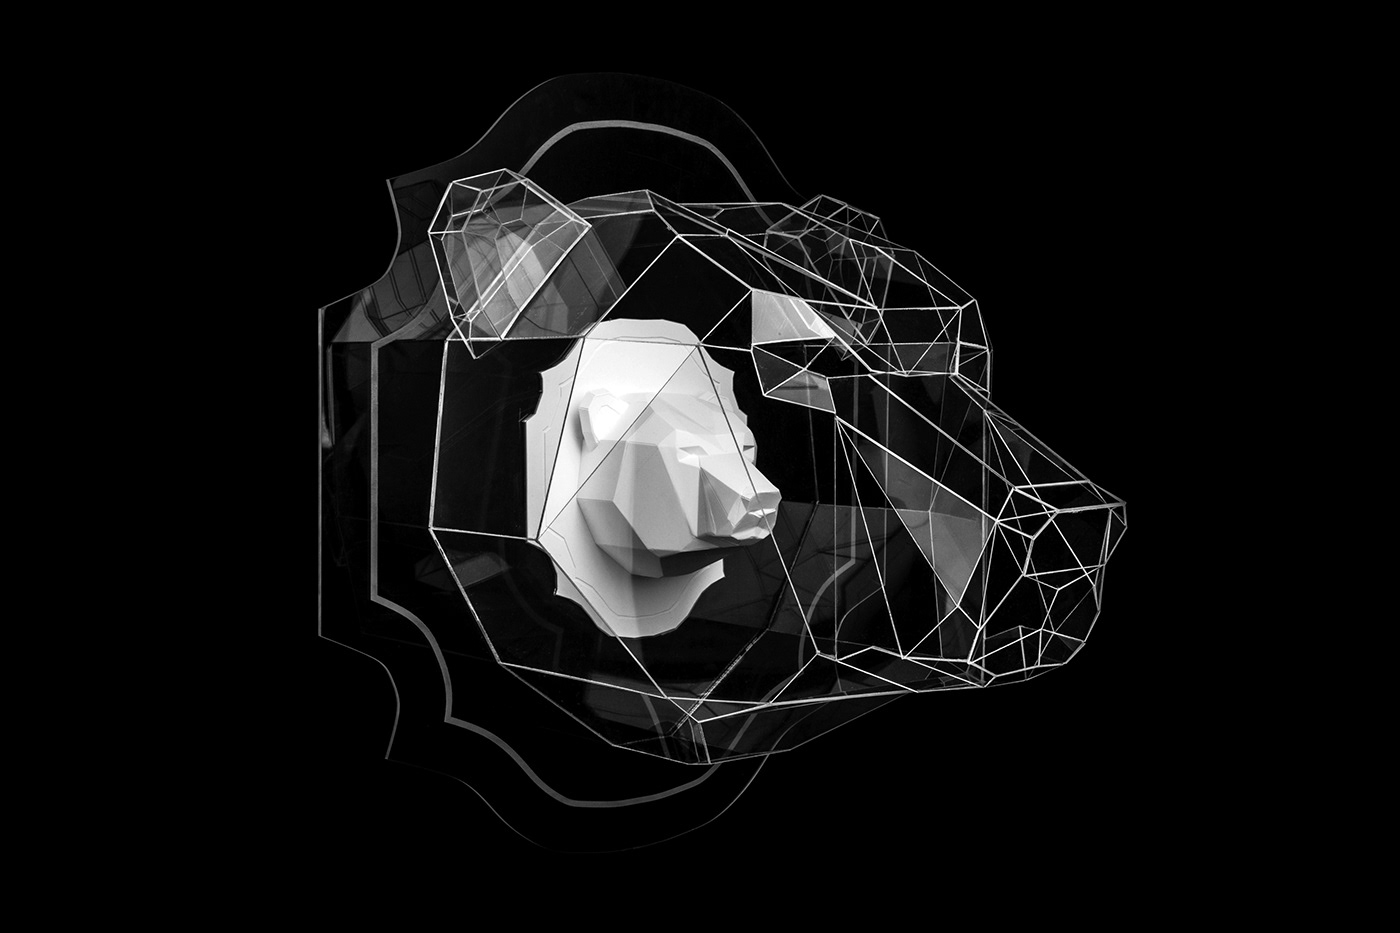 design Project concept coceptual idea bear sculpture head animal